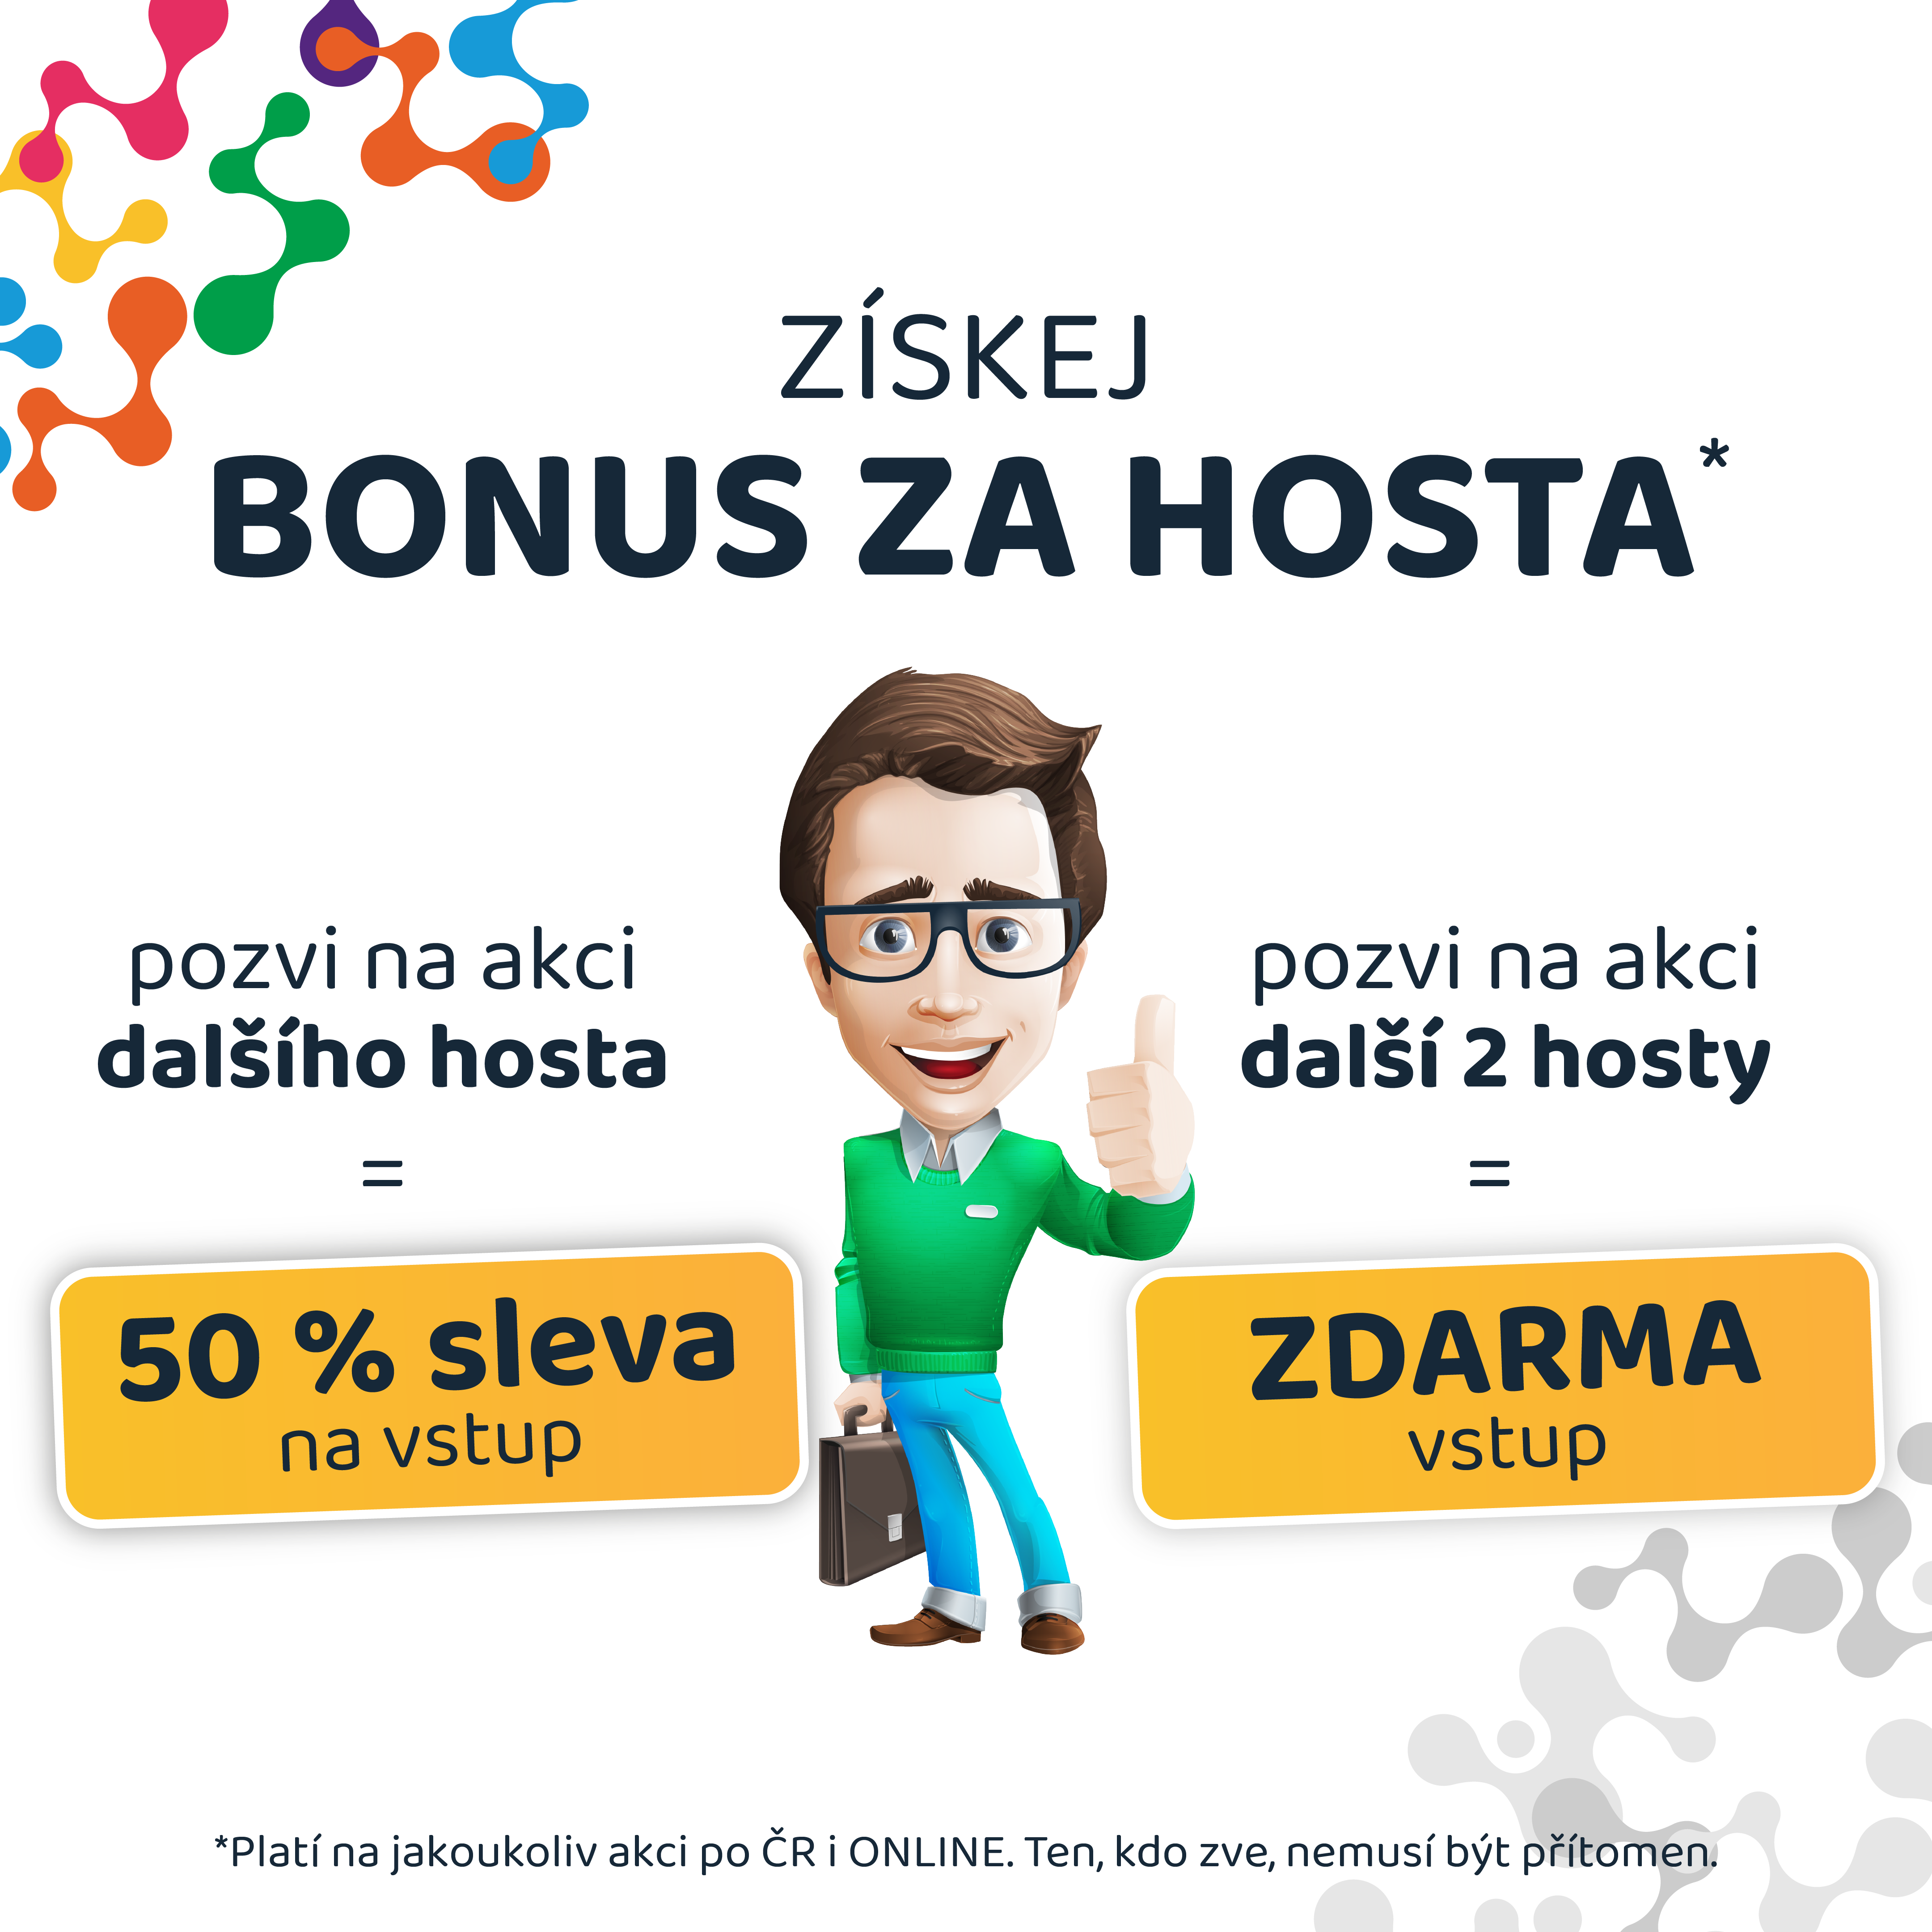 001_bonus_za_hosta_modra.png